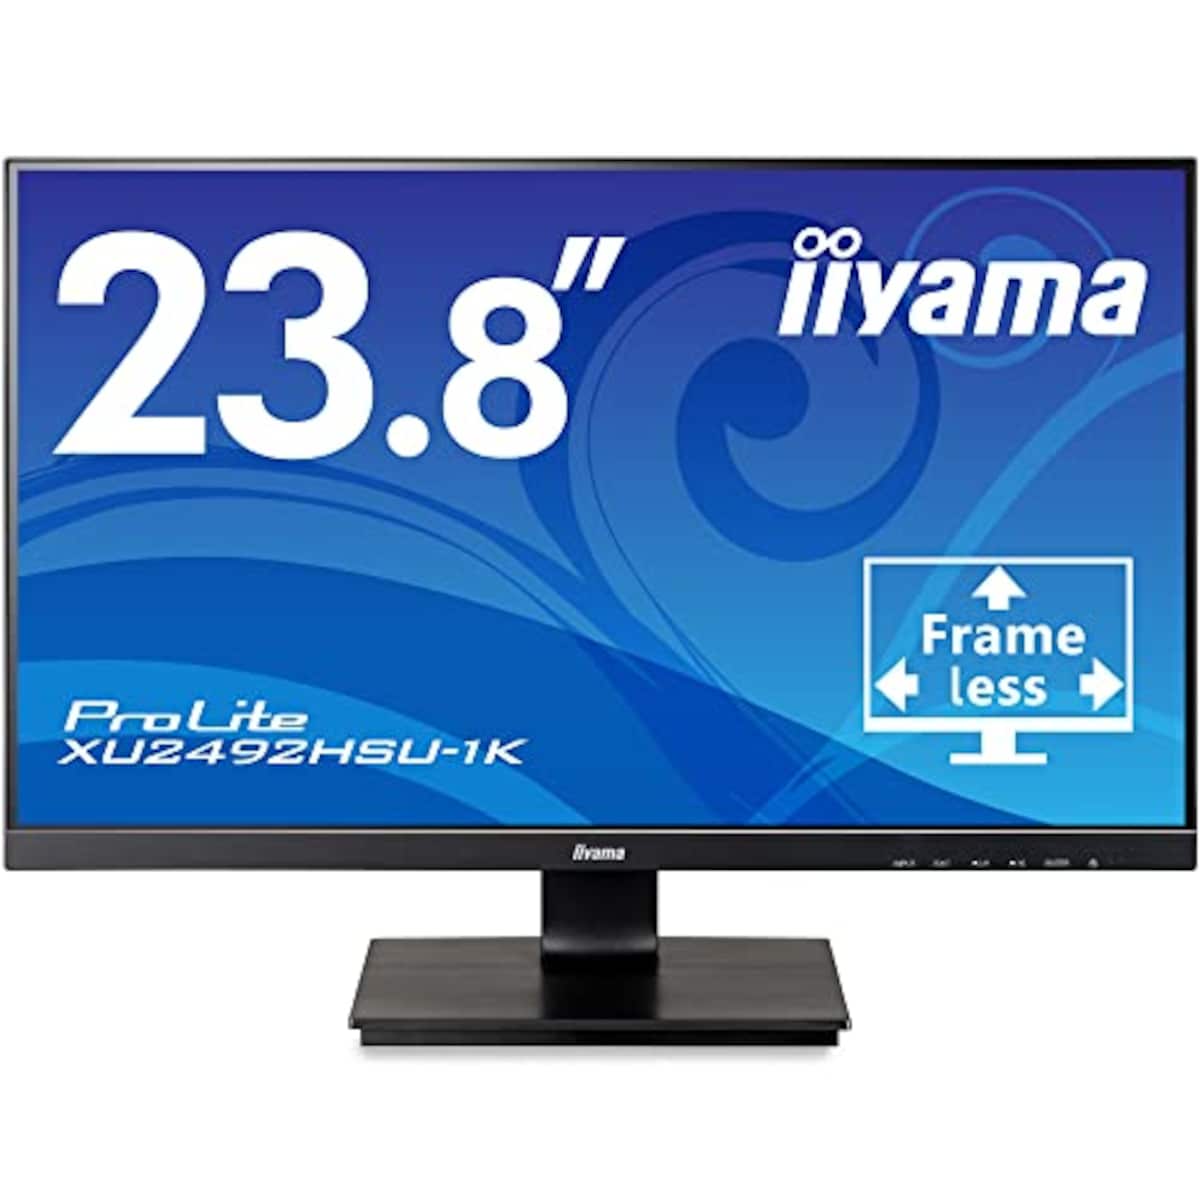 マウスコンピューター iiyama モニター ディスプレイ 23.8インチ フルHD IPS方式 角度調整 HDMI DisplayPort D-Sub USB2.0×2 全ケーブル付 3年保証 国内サポート XU2492HSU-B1K